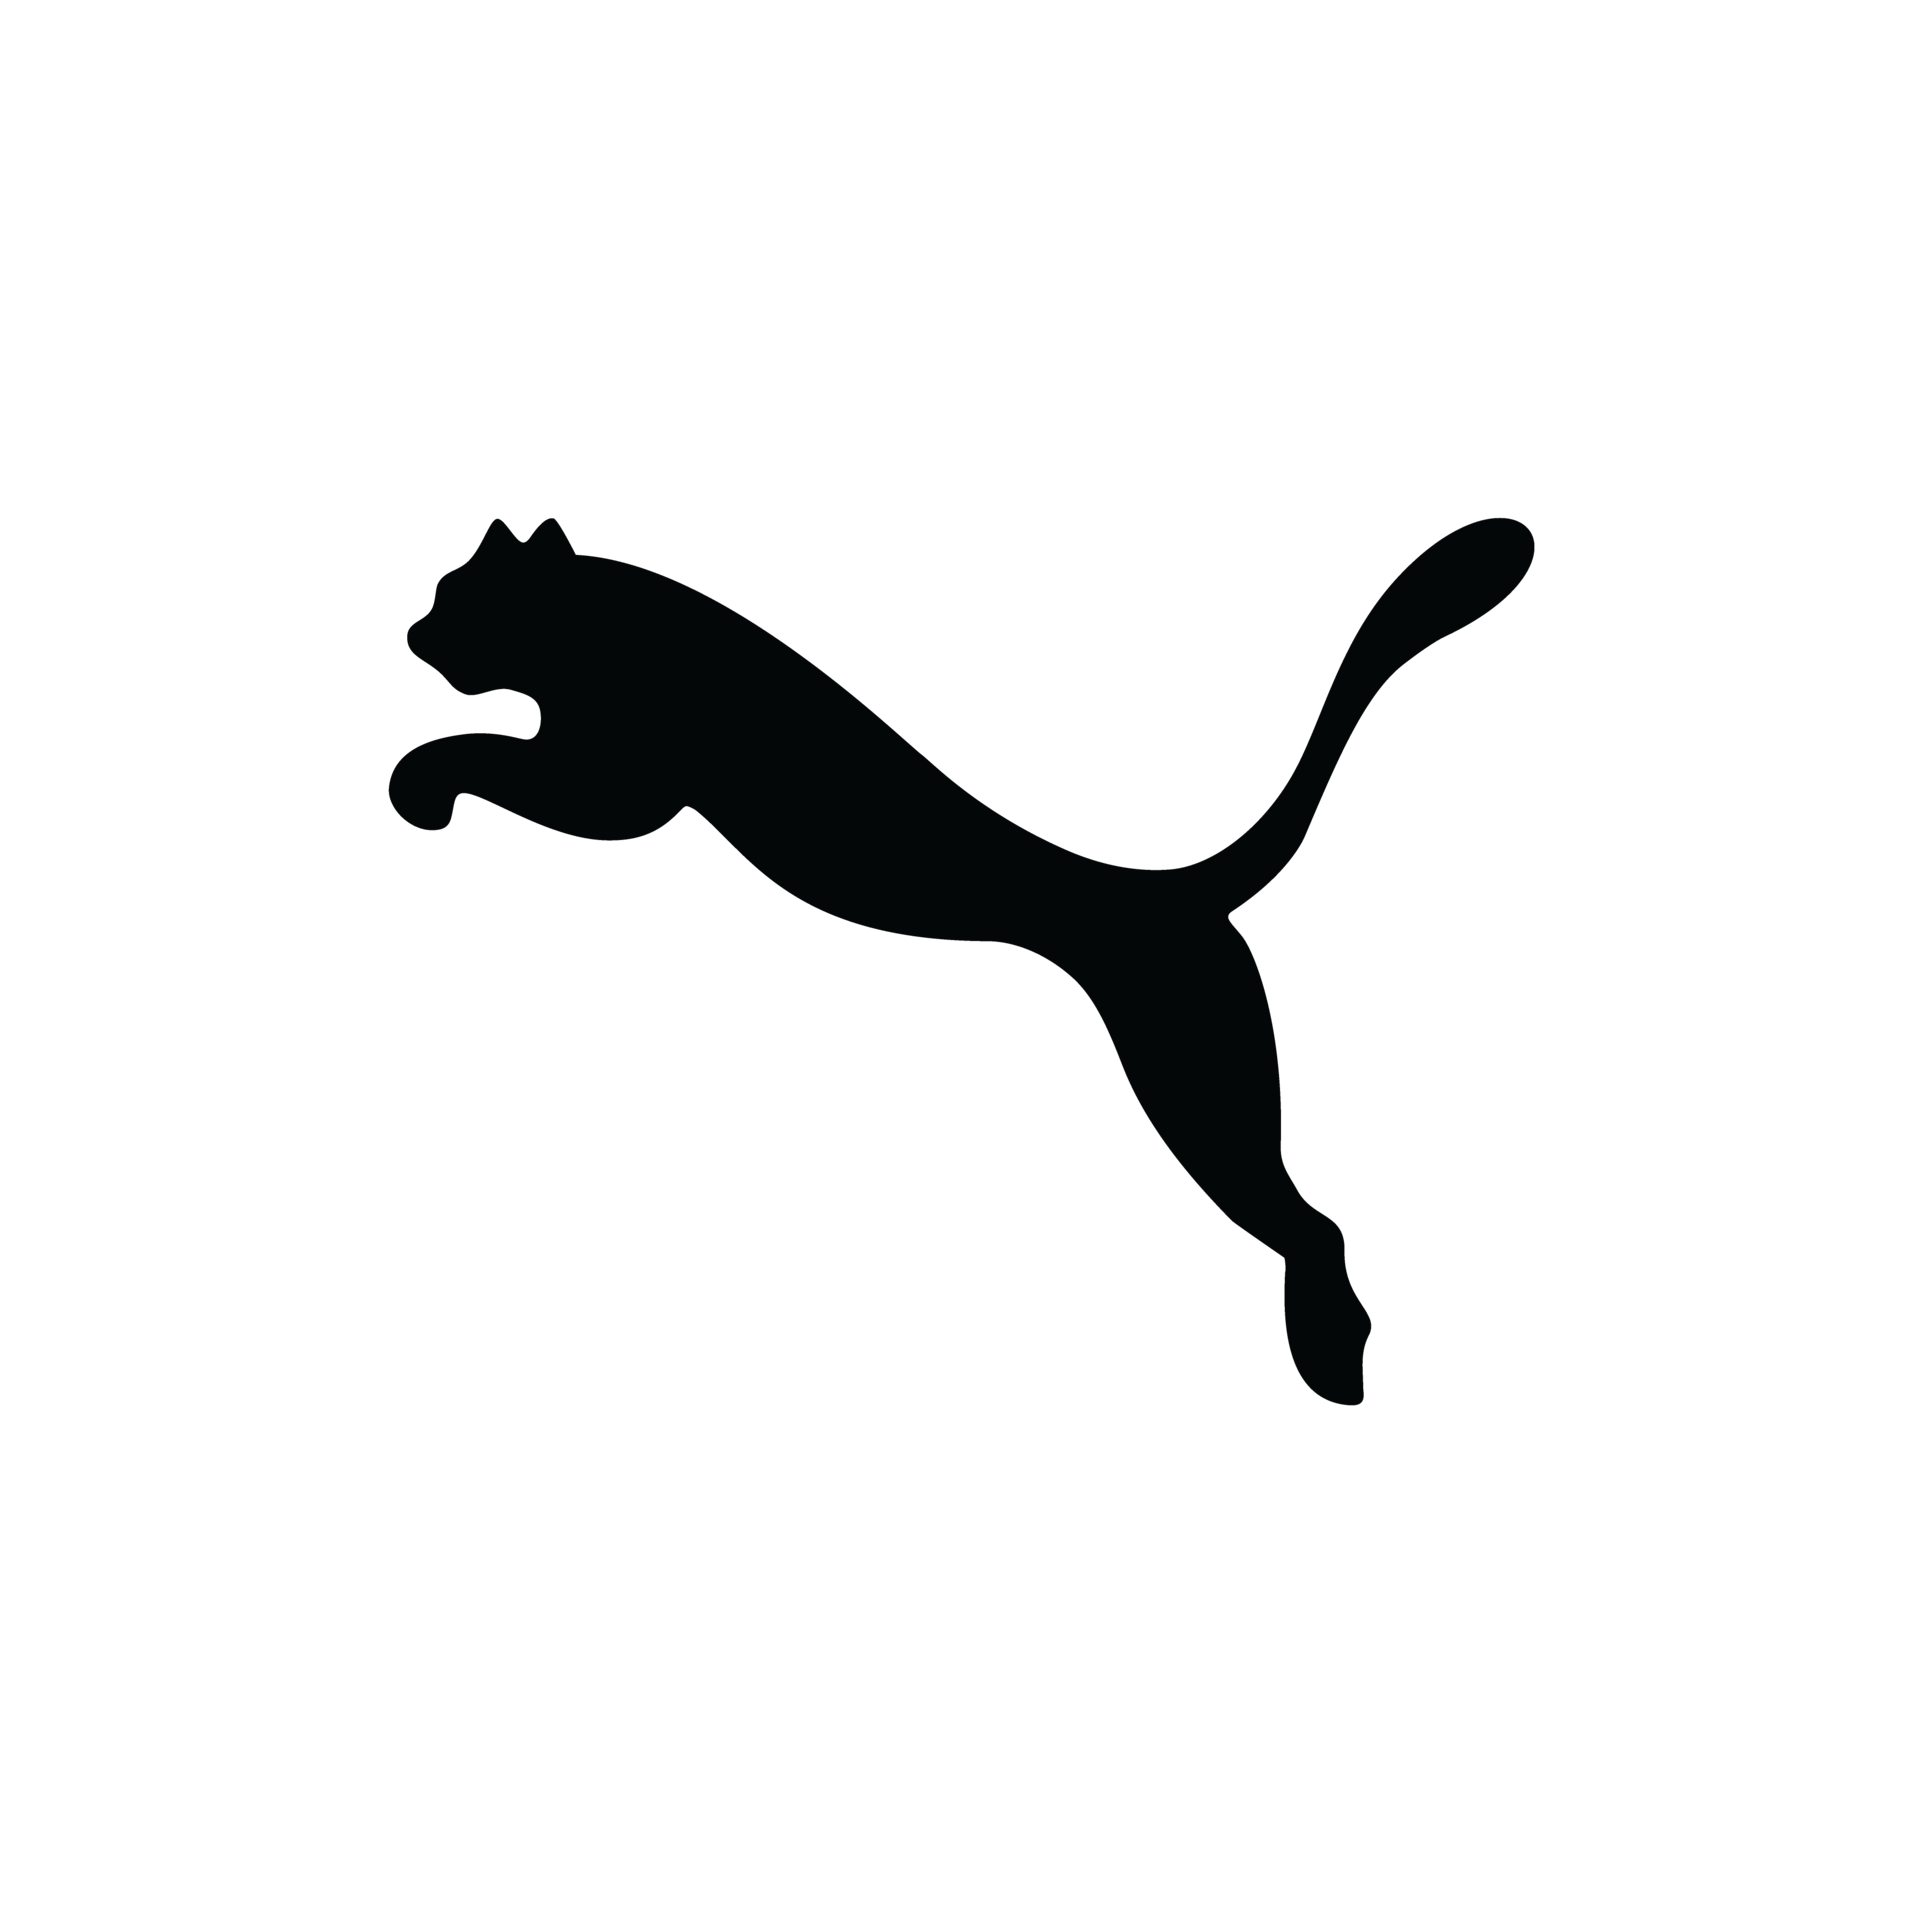 Free Puma Logo Transparent, Download Free Puma Logo Transparent png images,  Free ClipArts on Clipart Library